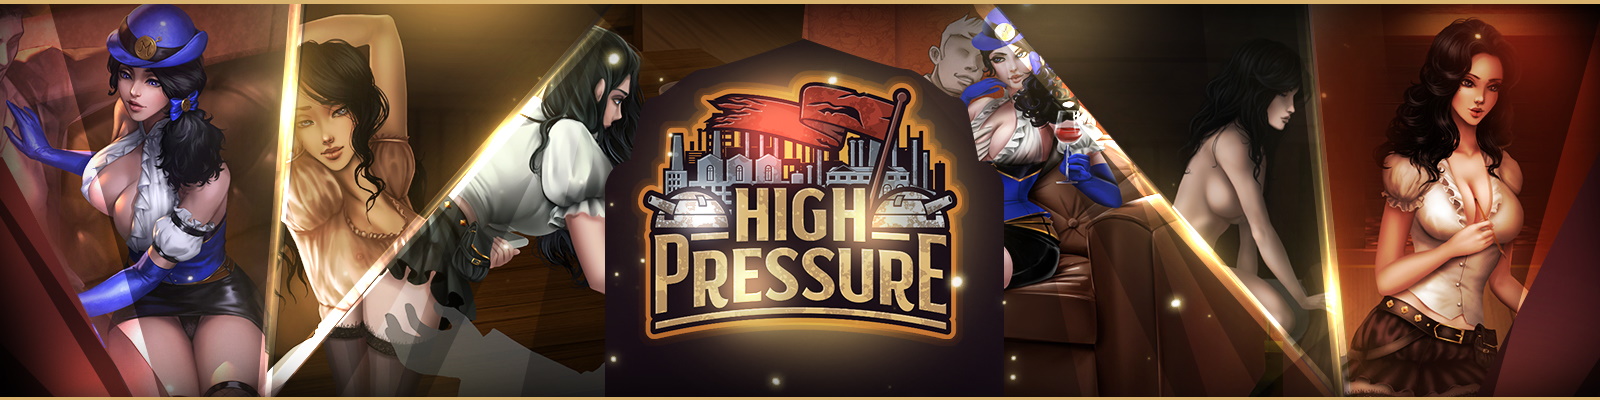 HighPressure